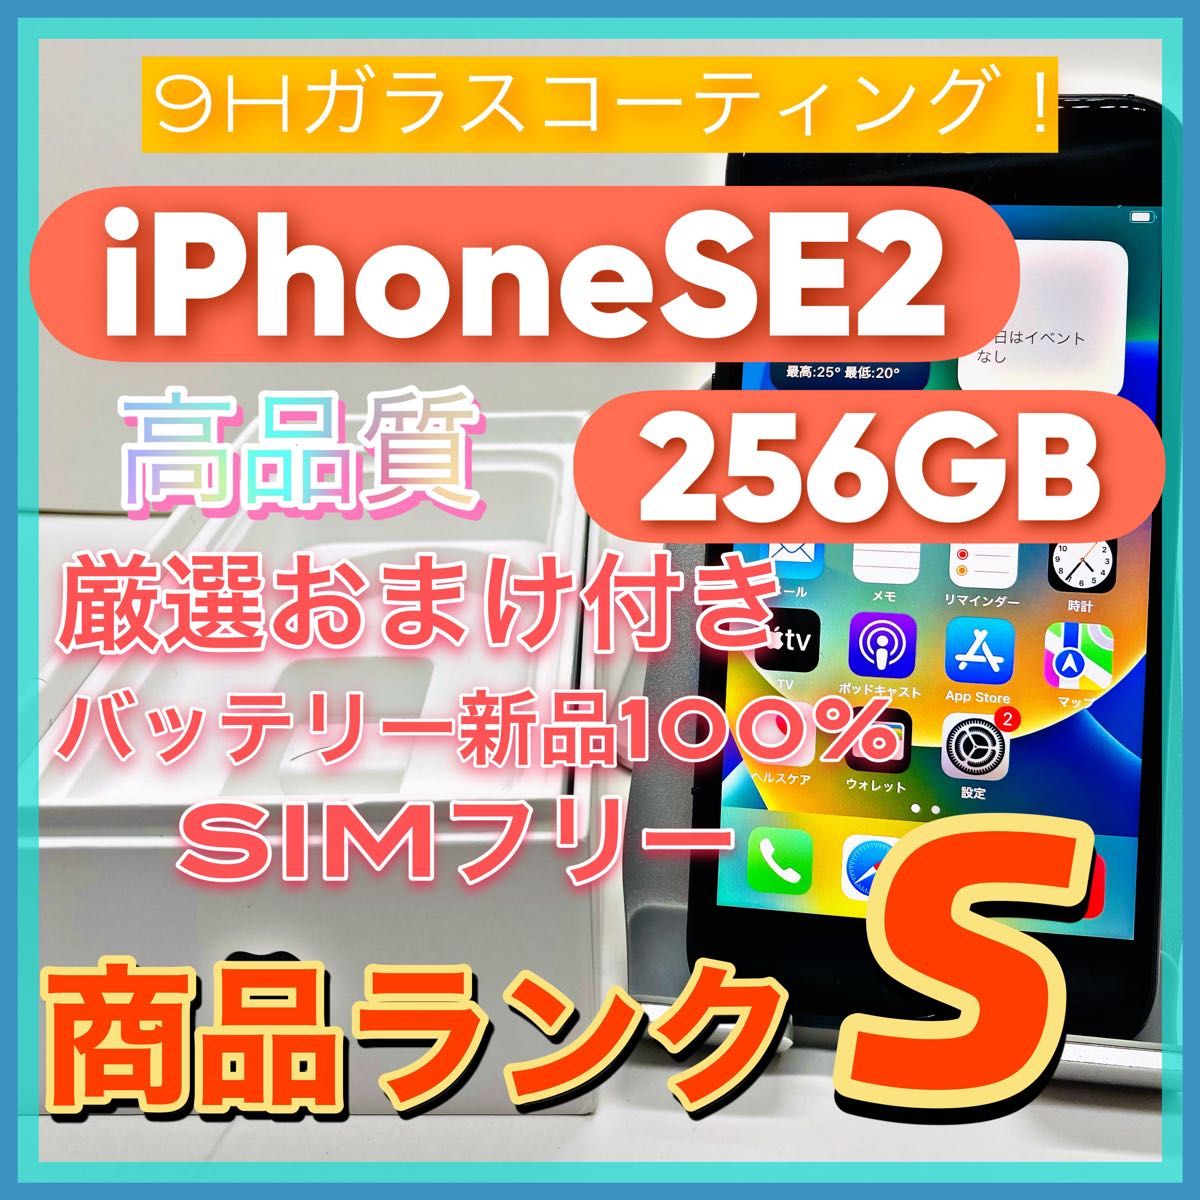 【売り切り特価】iPhoneSE2 256GB SIMフリー【オススメの逸品】